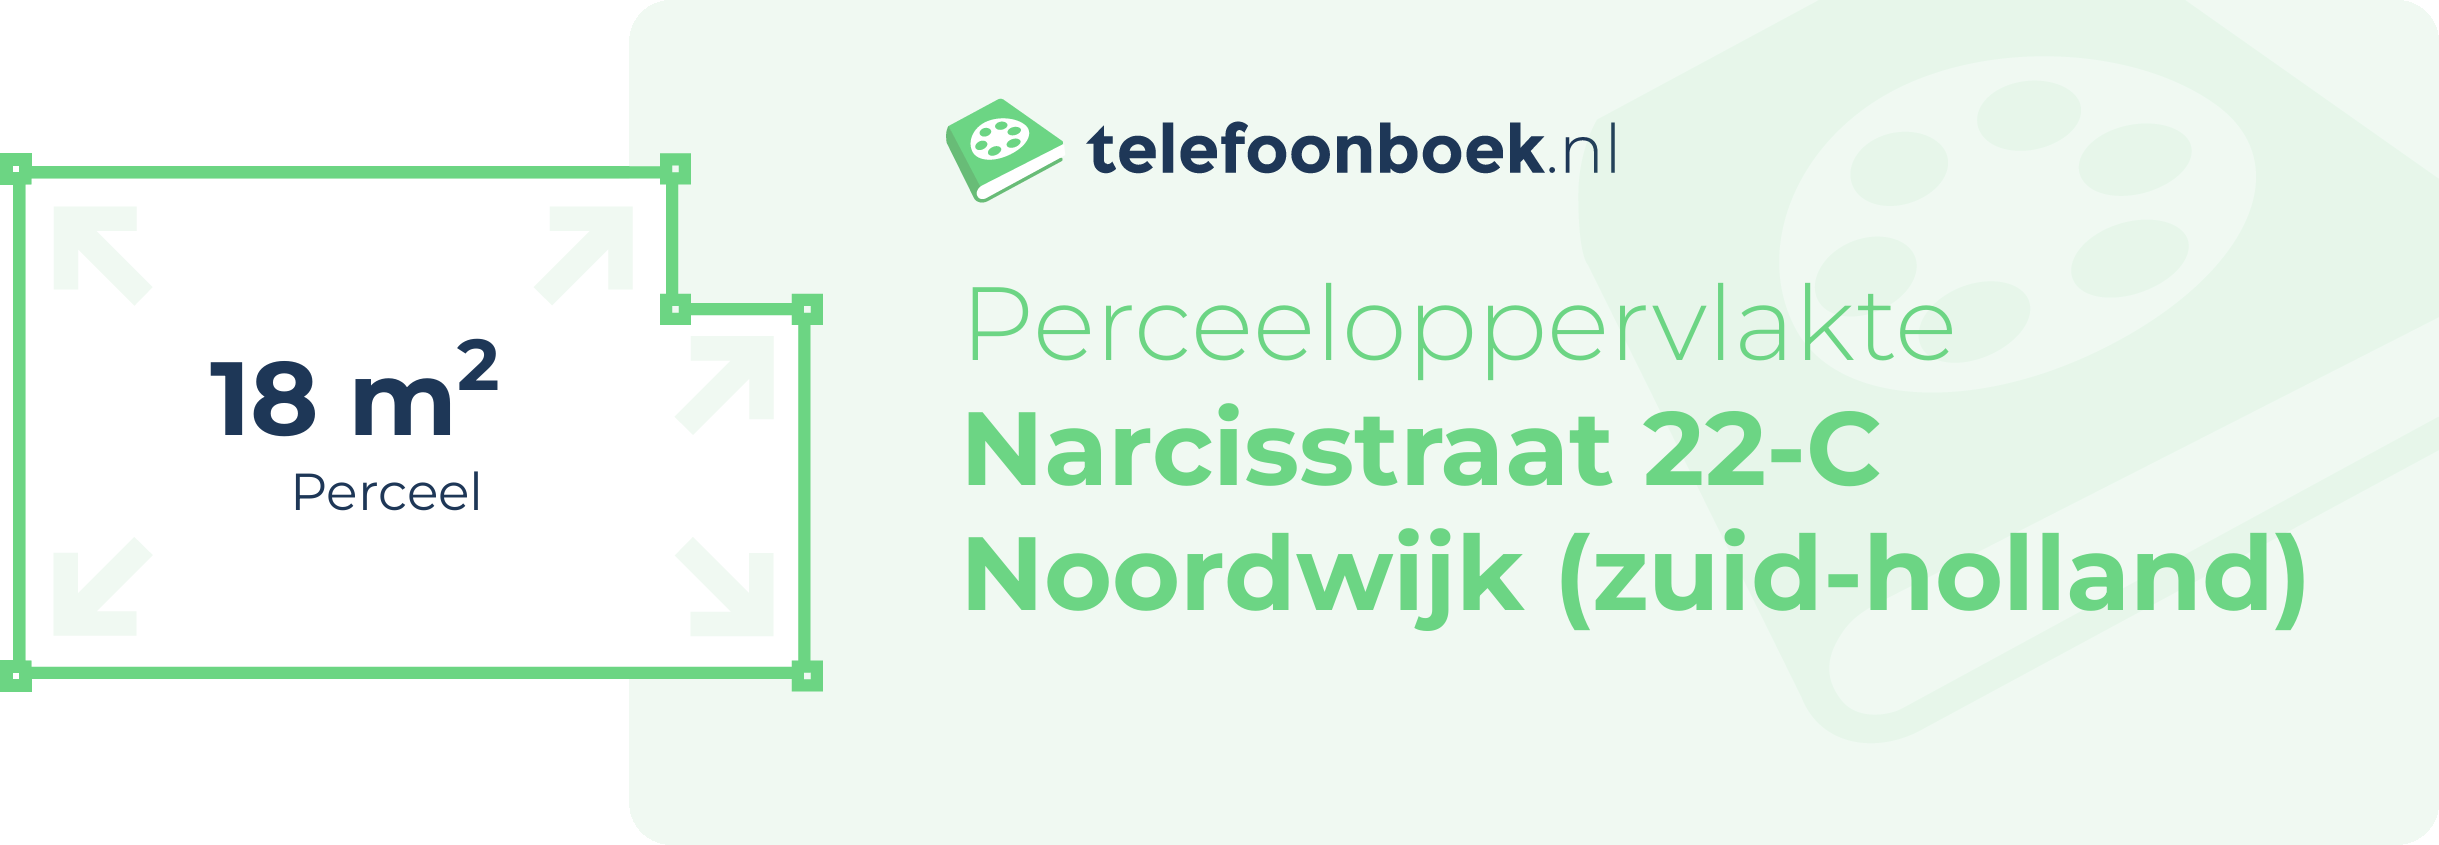 Perceeloppervlakte Narcisstraat 22-C Noordwijk (Zuid-Holland)